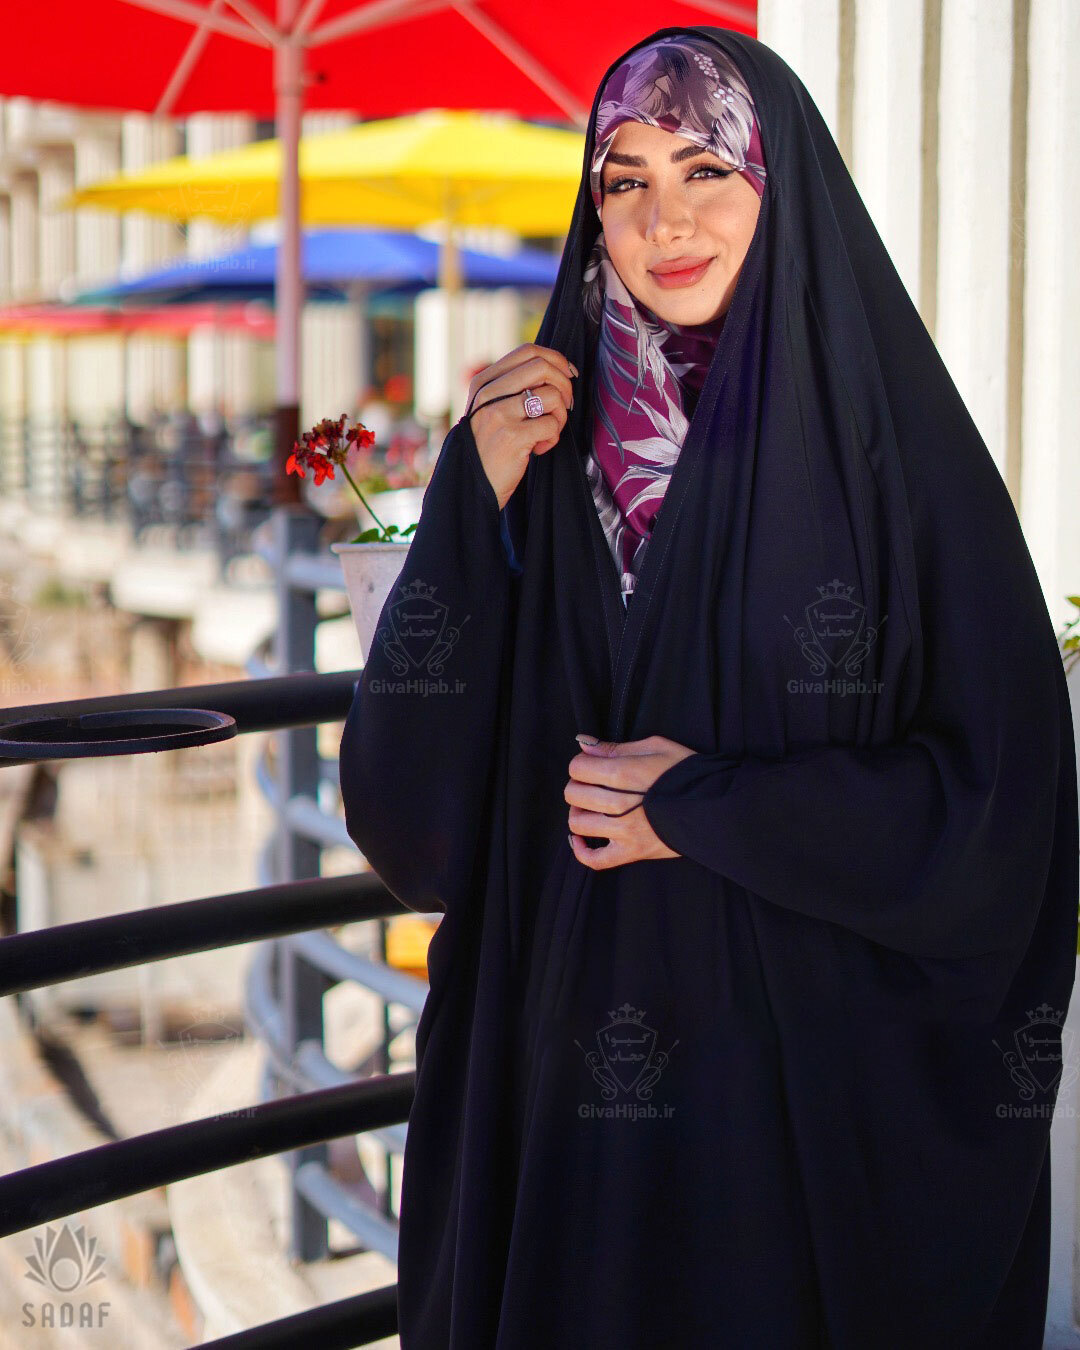  چادر مدل عربی اصیل جنس سوپر تایتانیک 